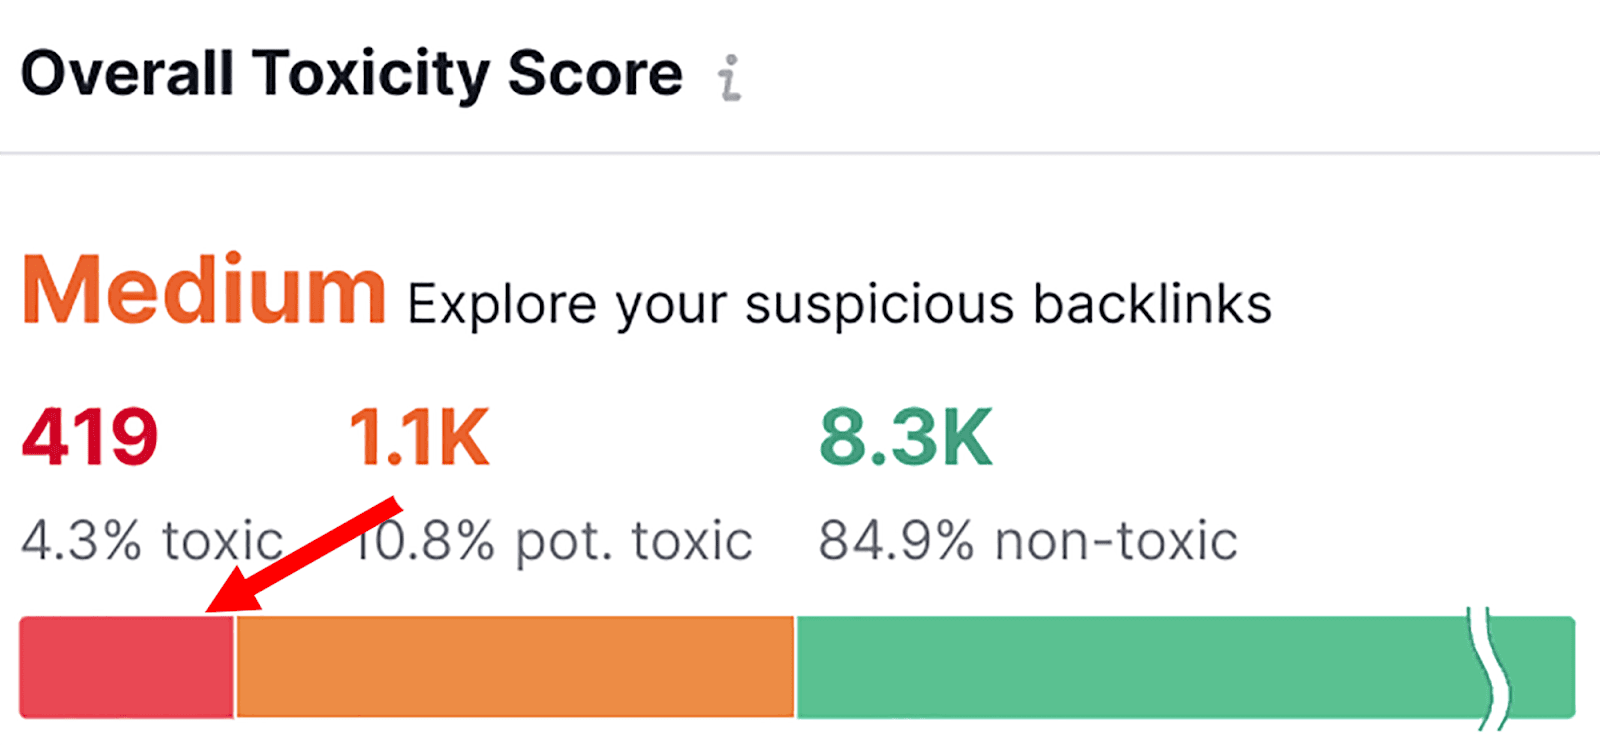 Select the toxic score